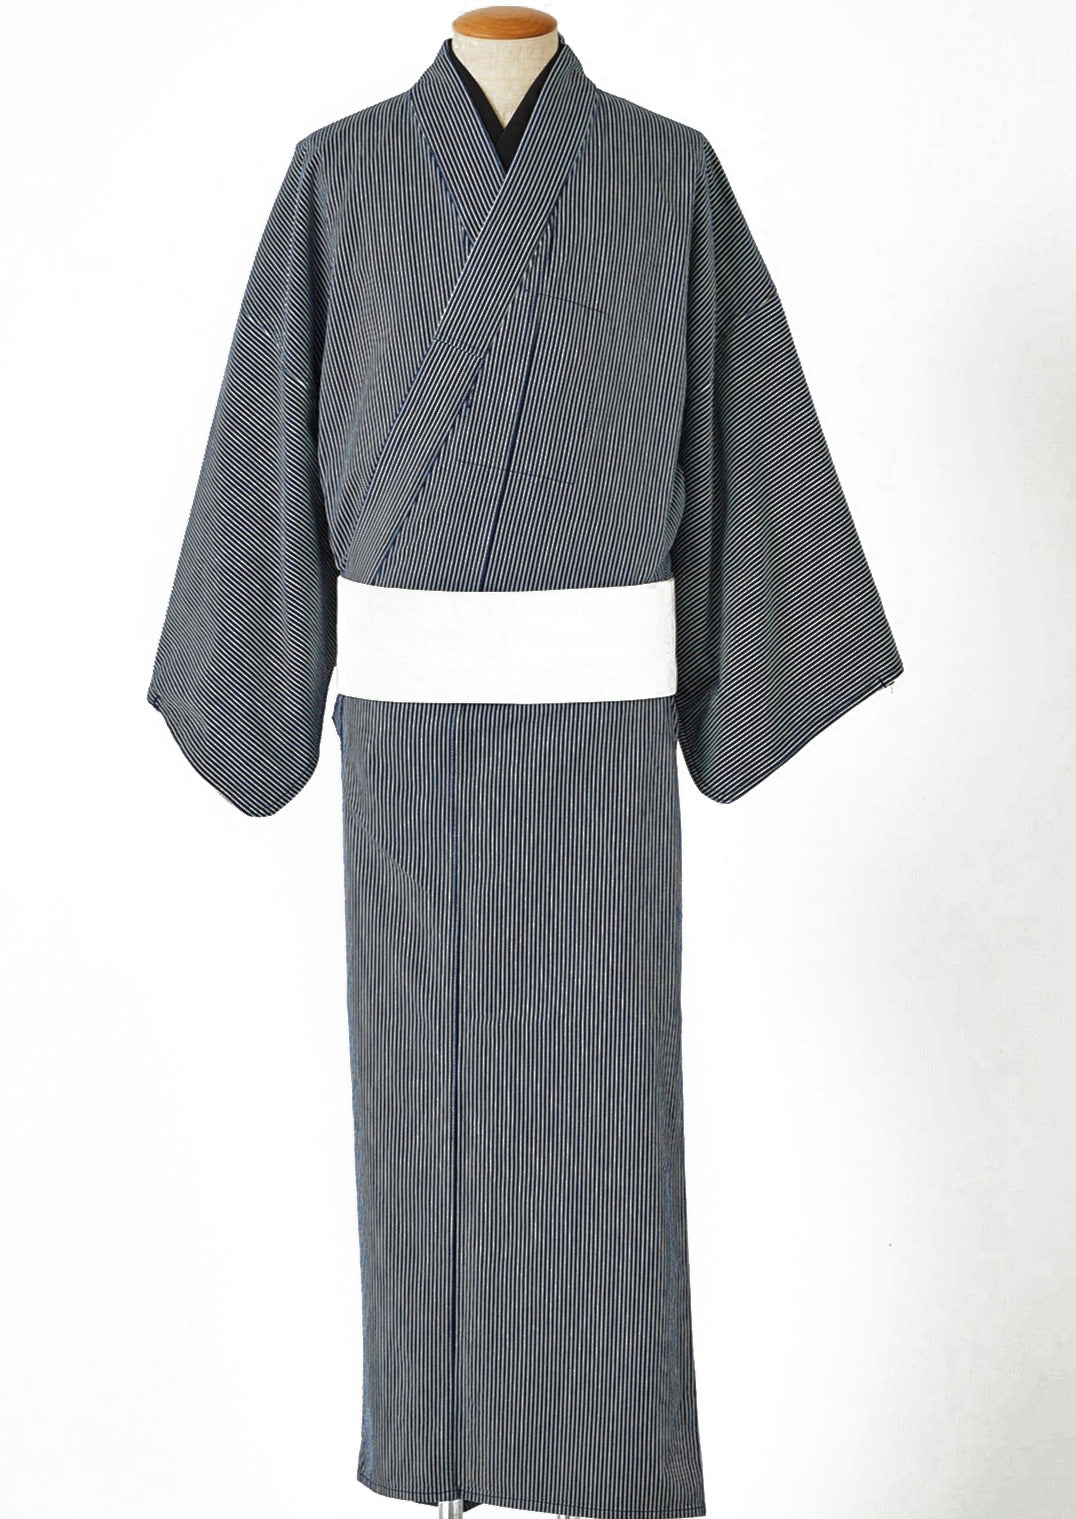 KAPUKI original denim kimono hickory indigo